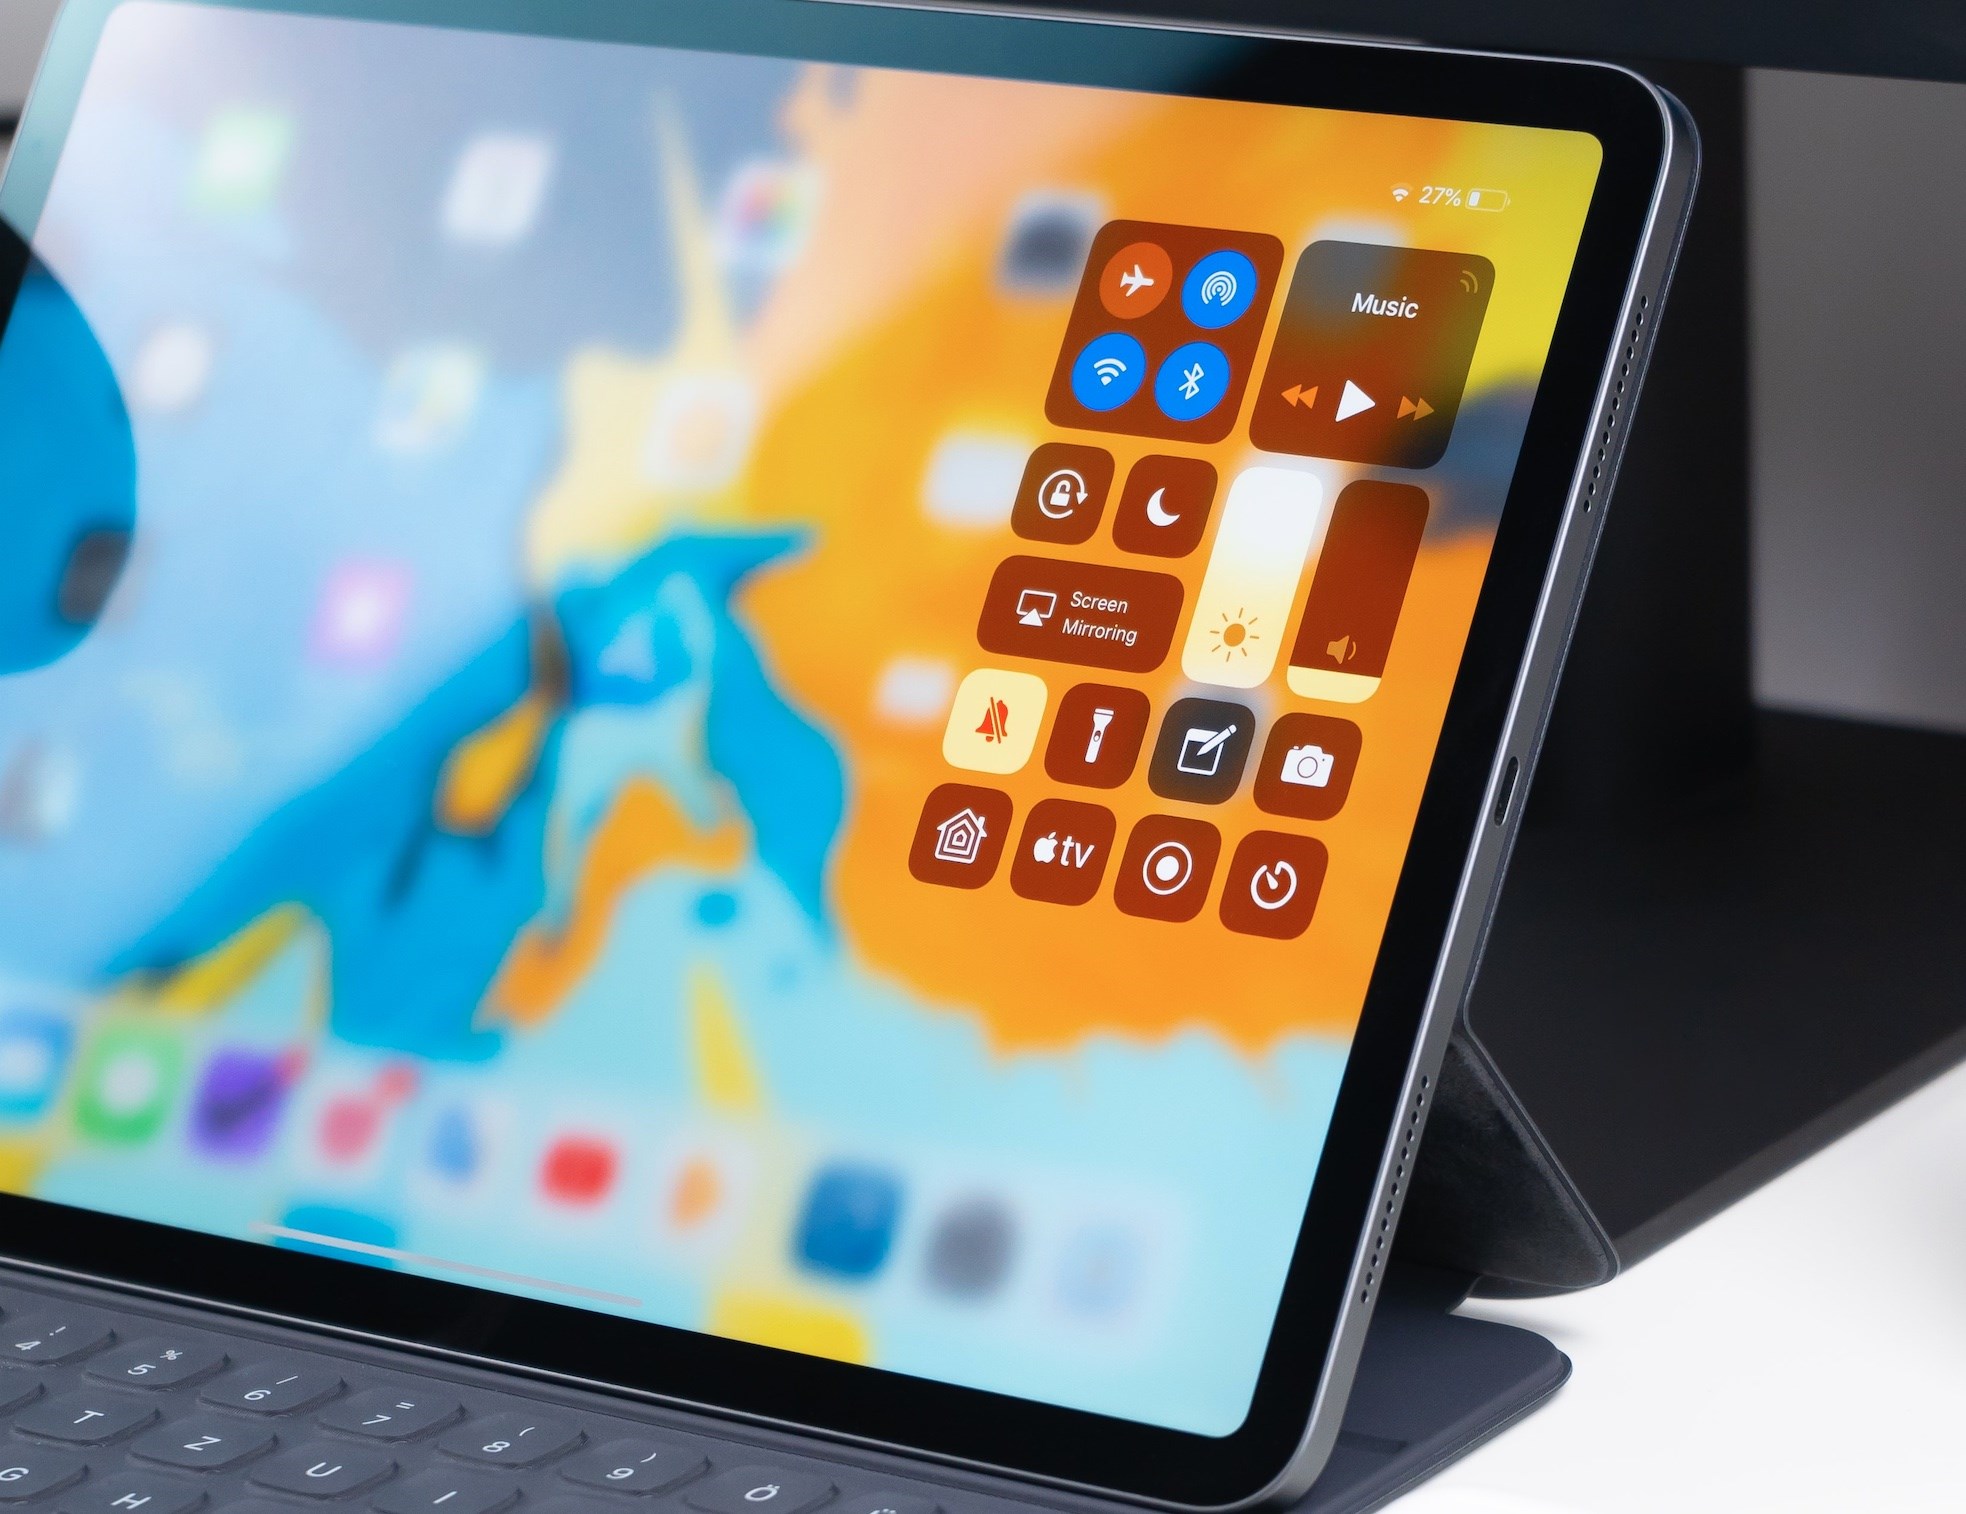 MiniLED ekranlı iPad Pro, önümüzdeki yılın başında piyasaya sürülecek